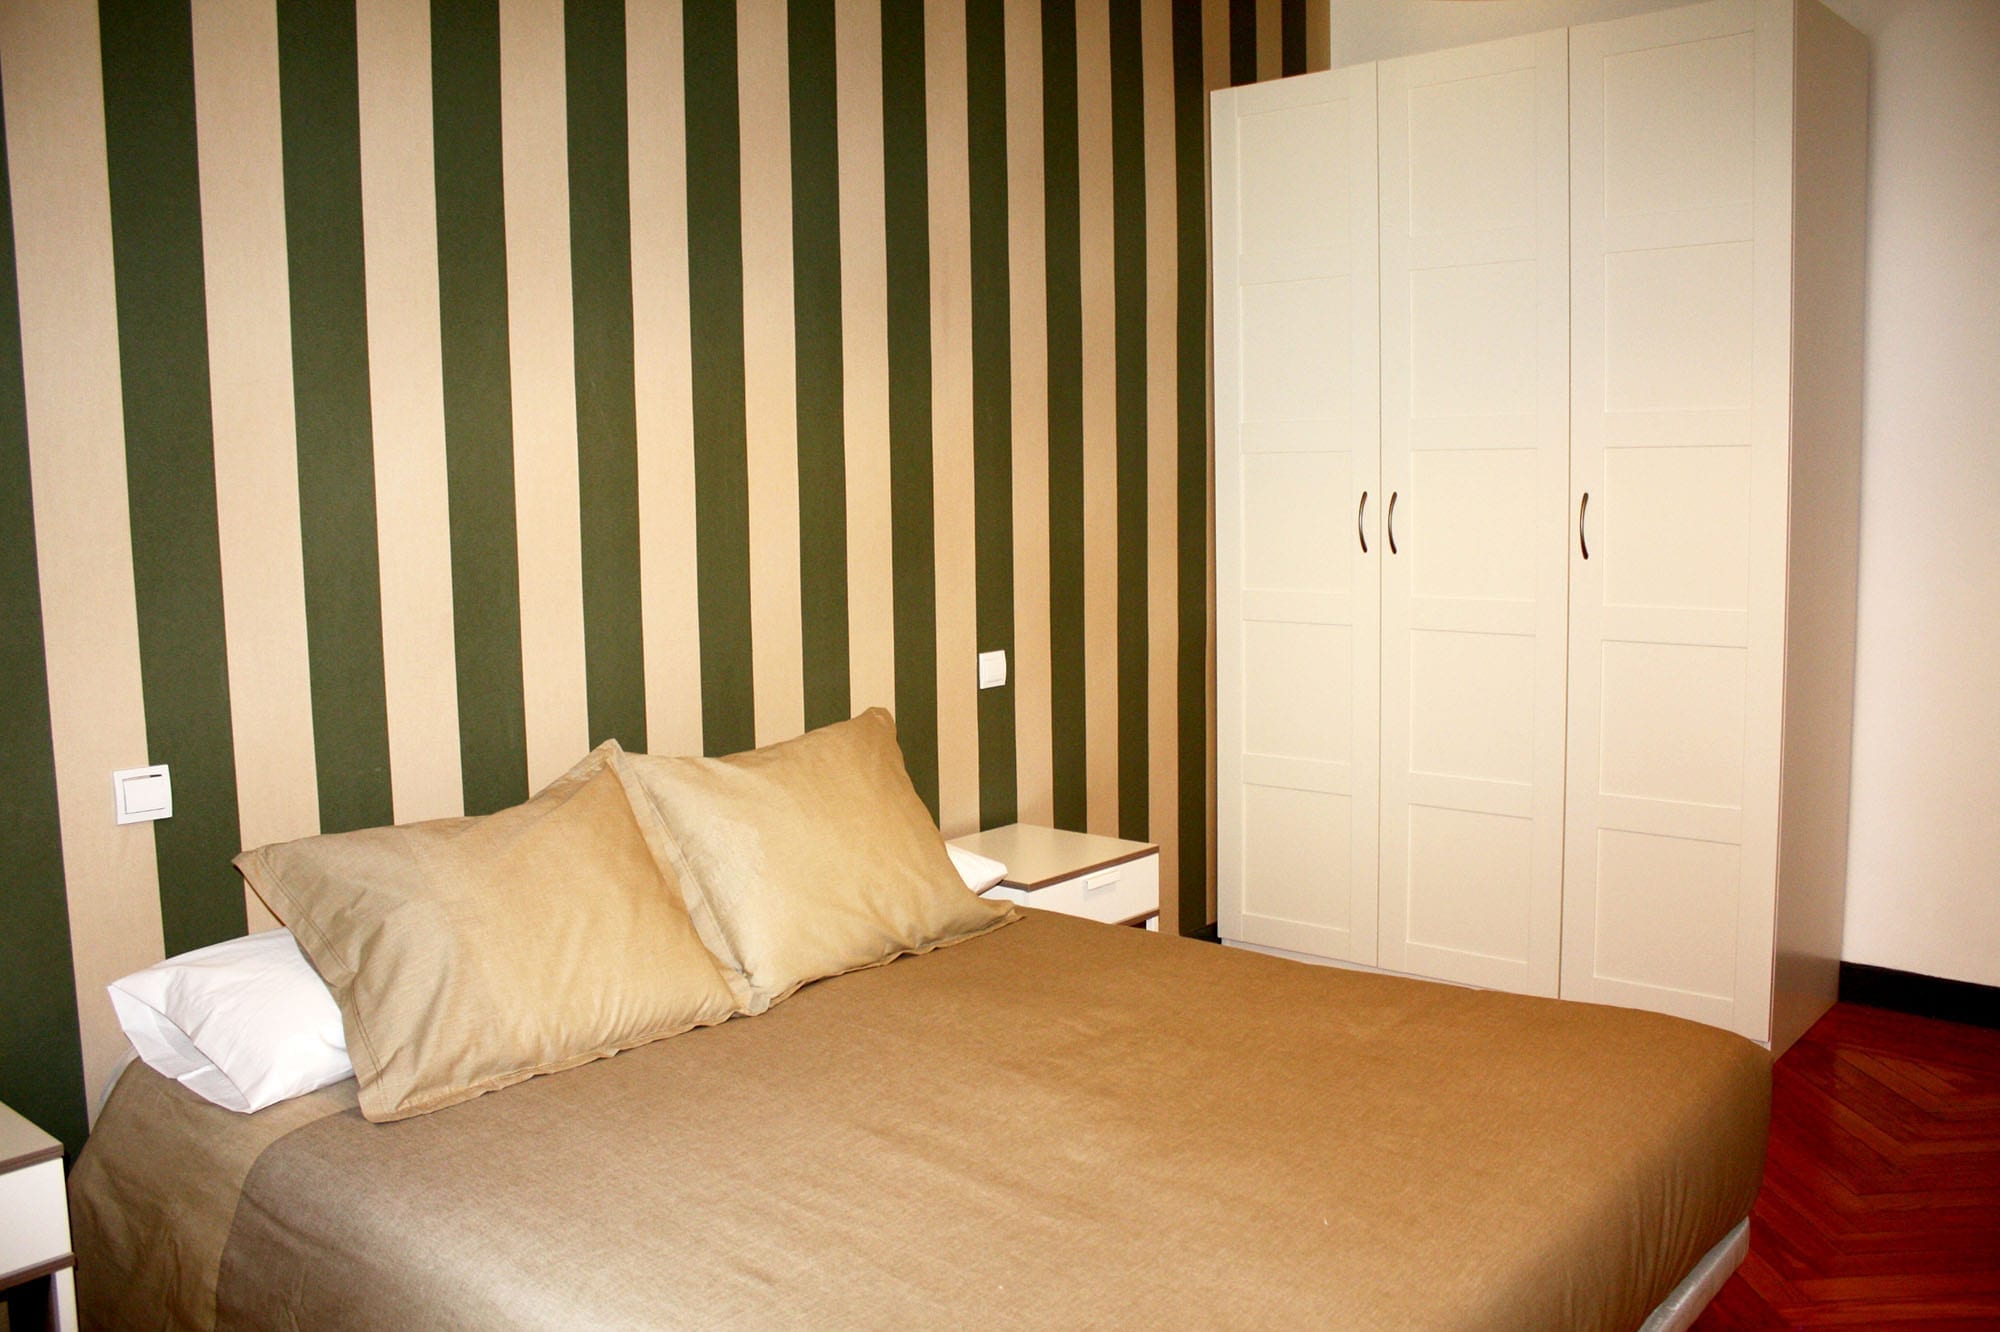 Room. 06 student apartment in gran via 15 vitium residencias